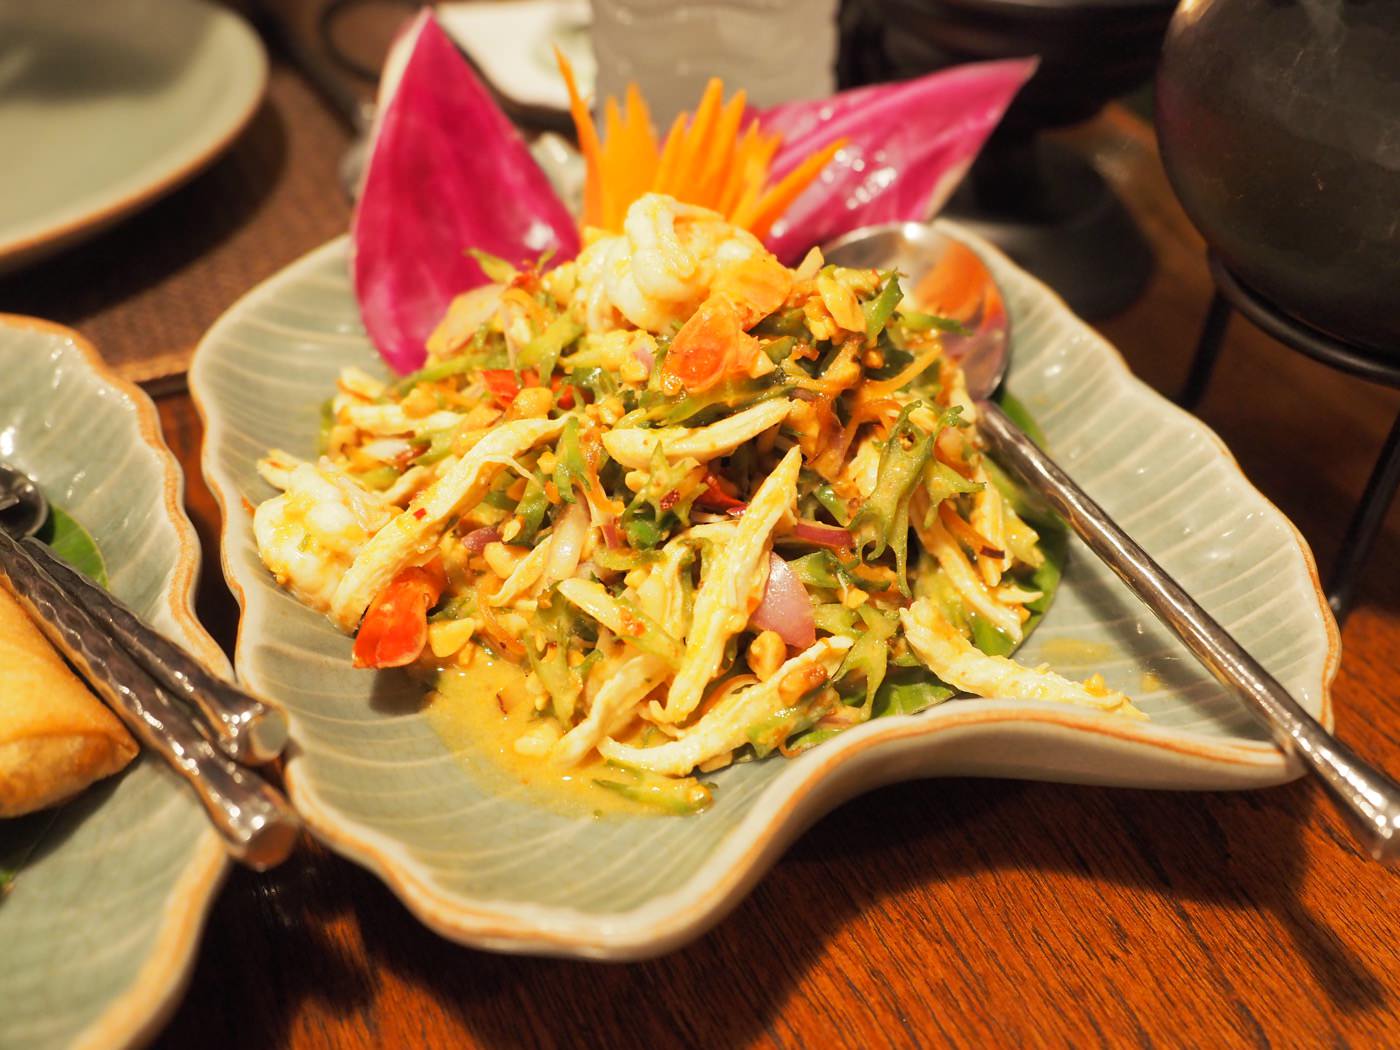 曼谷美食 Baan Khanitha Thai Cuisine 意猶未盡的泰式經典菜餚 - 一口冒險 Bitesized Adventure